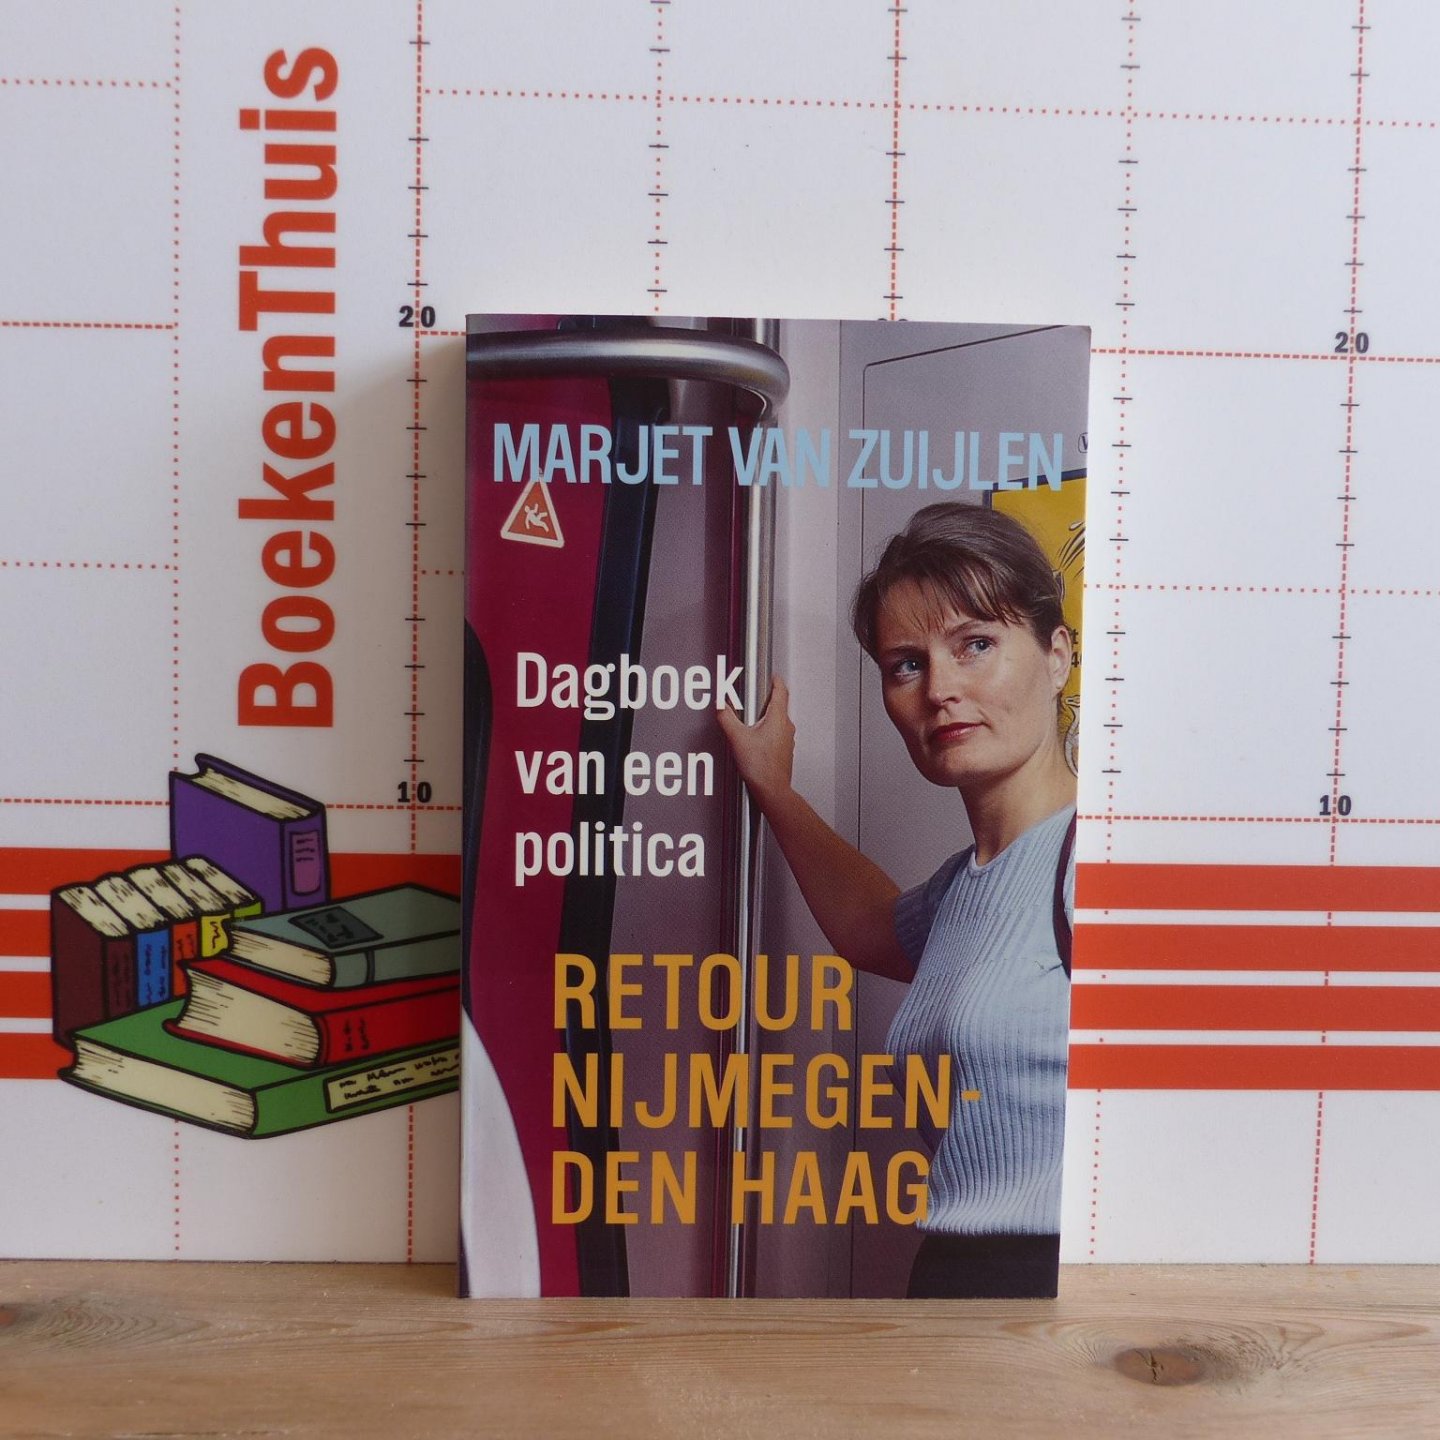 Zuijlen, Marjet van - dagboek van een politica, retour Nijmegen - Den Haag